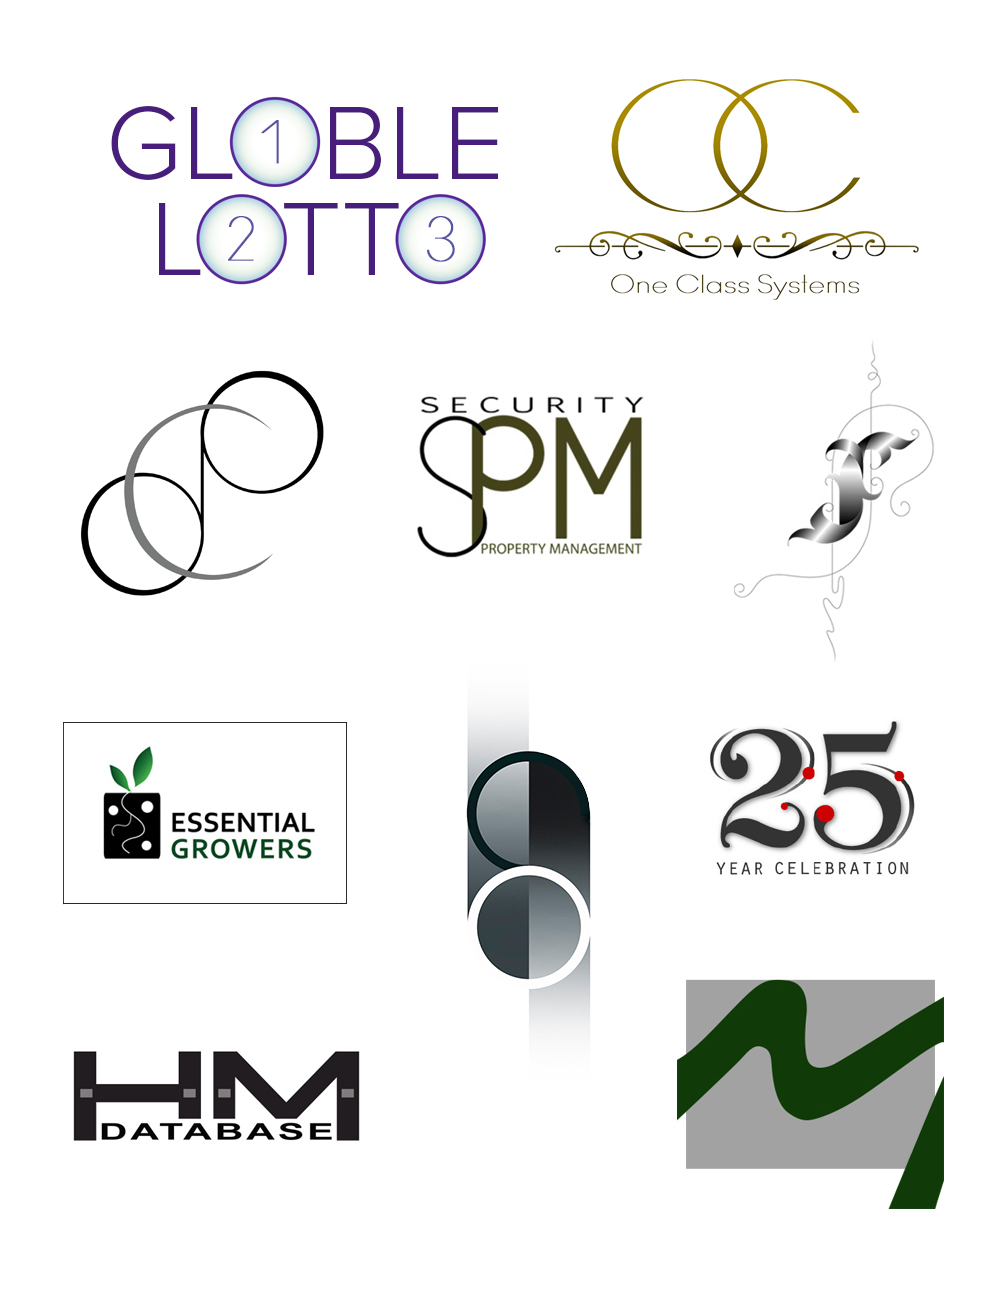 8 various logos and sybmols